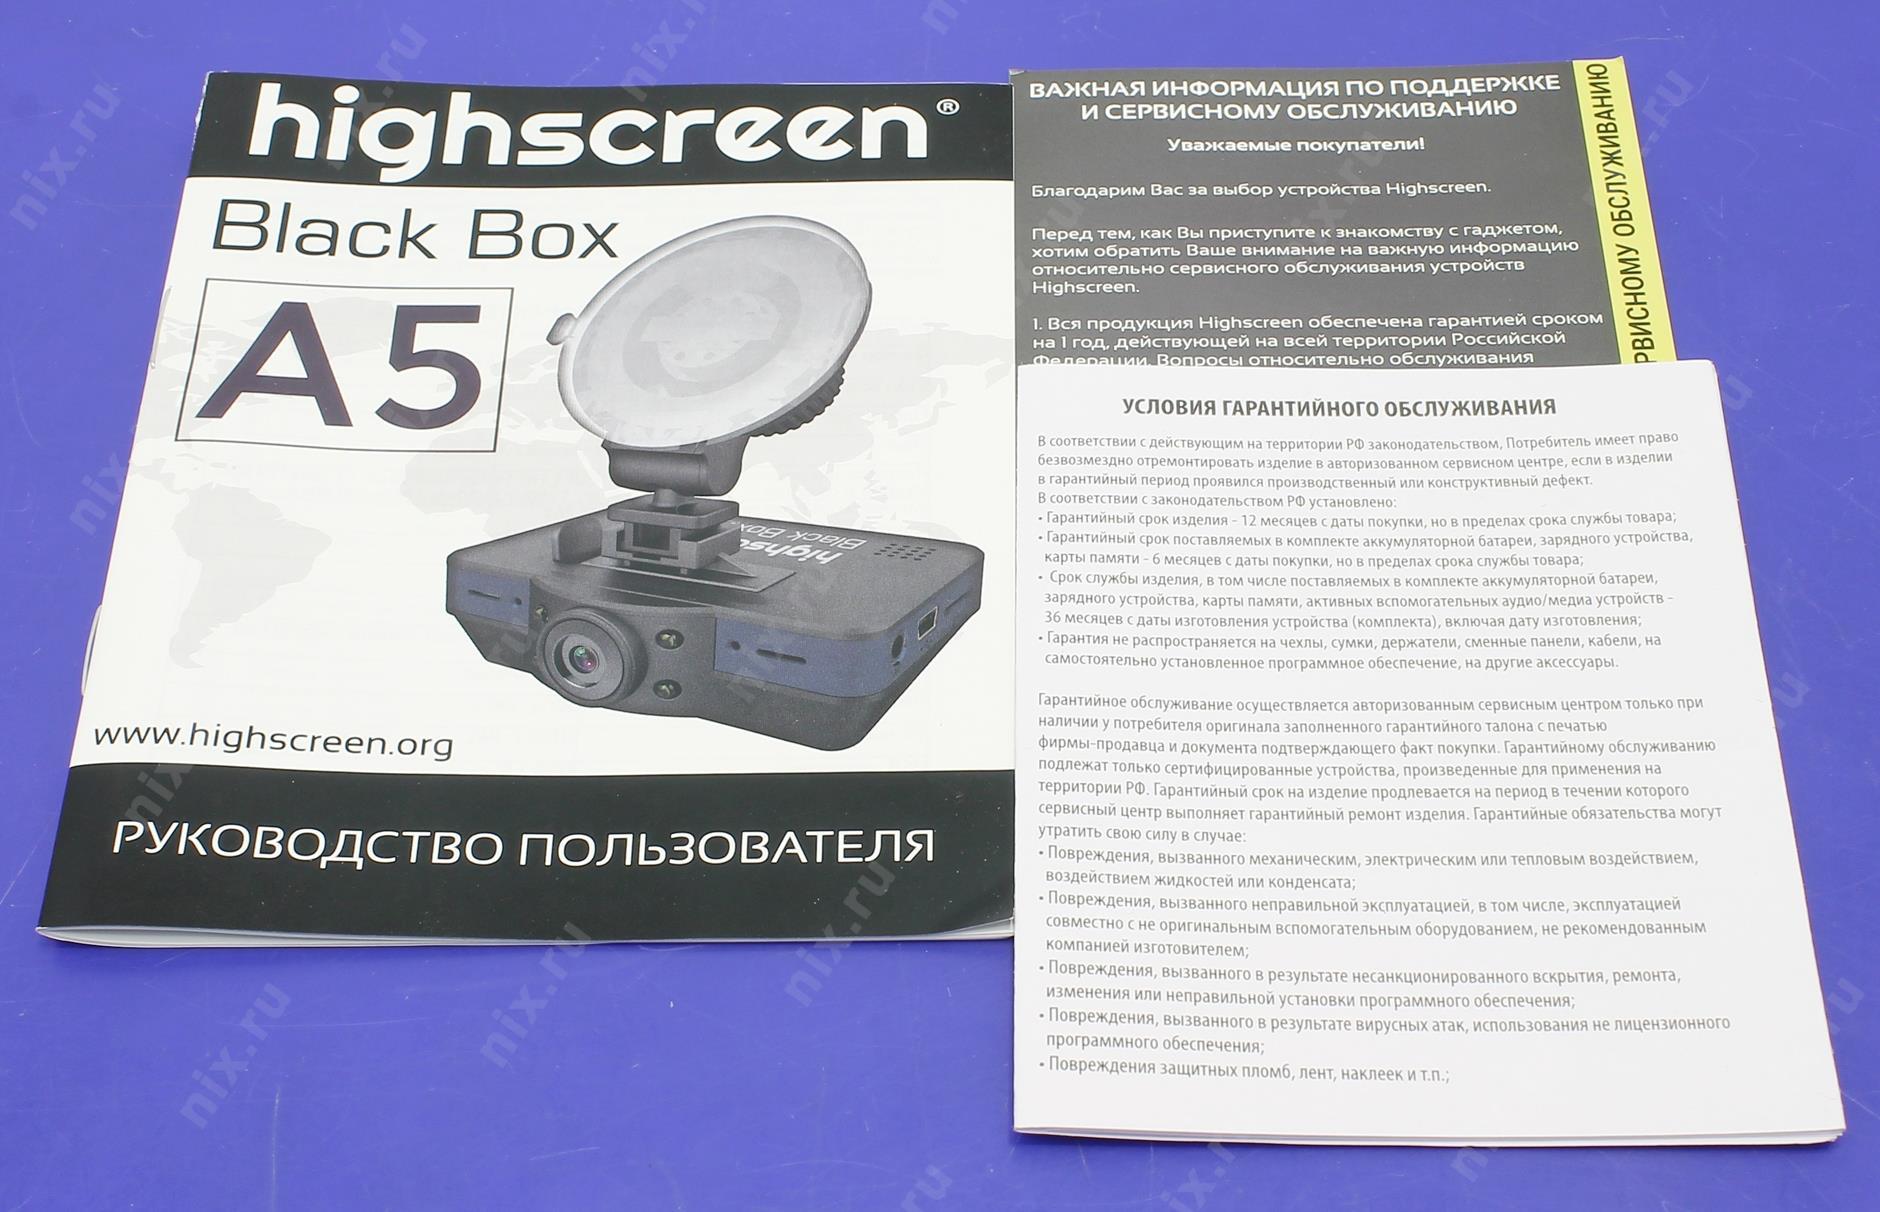 Компакт инструкция по применению. Видеорегистратор Highscreen Blackbox a5. Инструкция по пользованию видеорегистратором Highscreen.